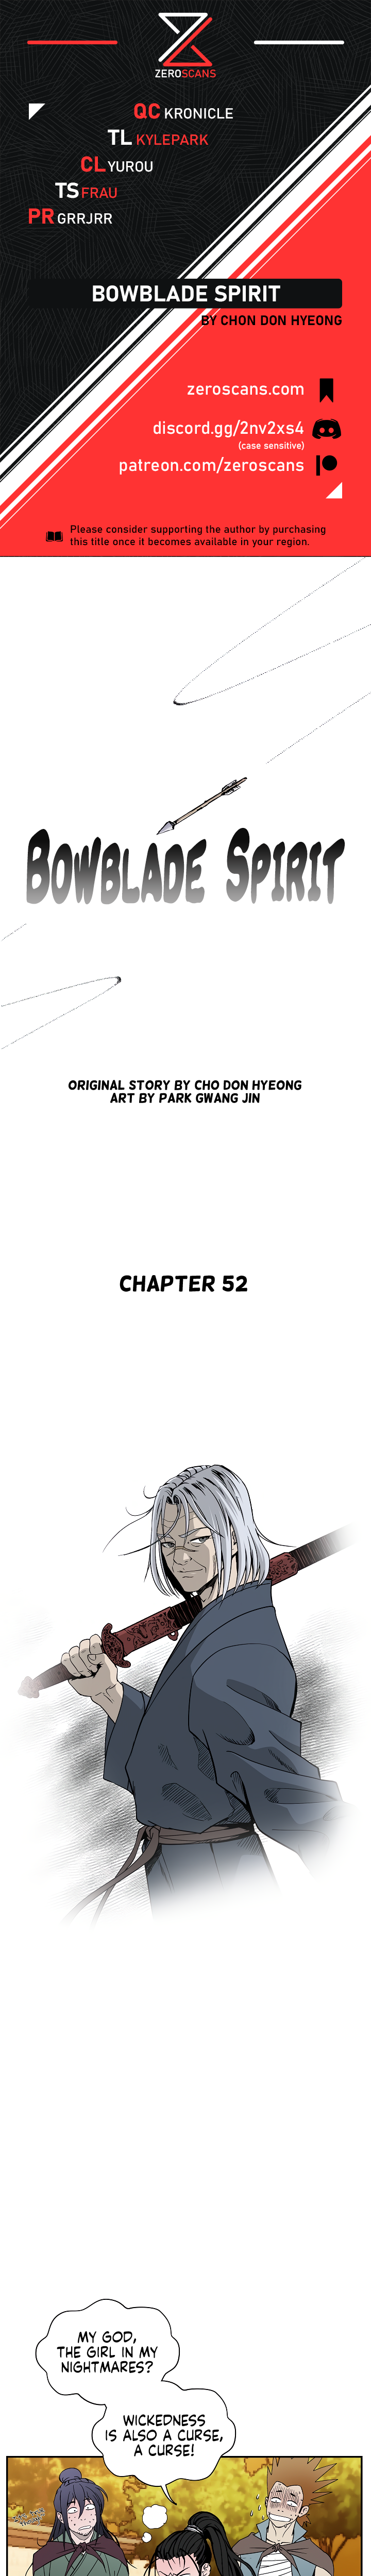 Bowblade Spirit - Chapter 3740 - Image 1